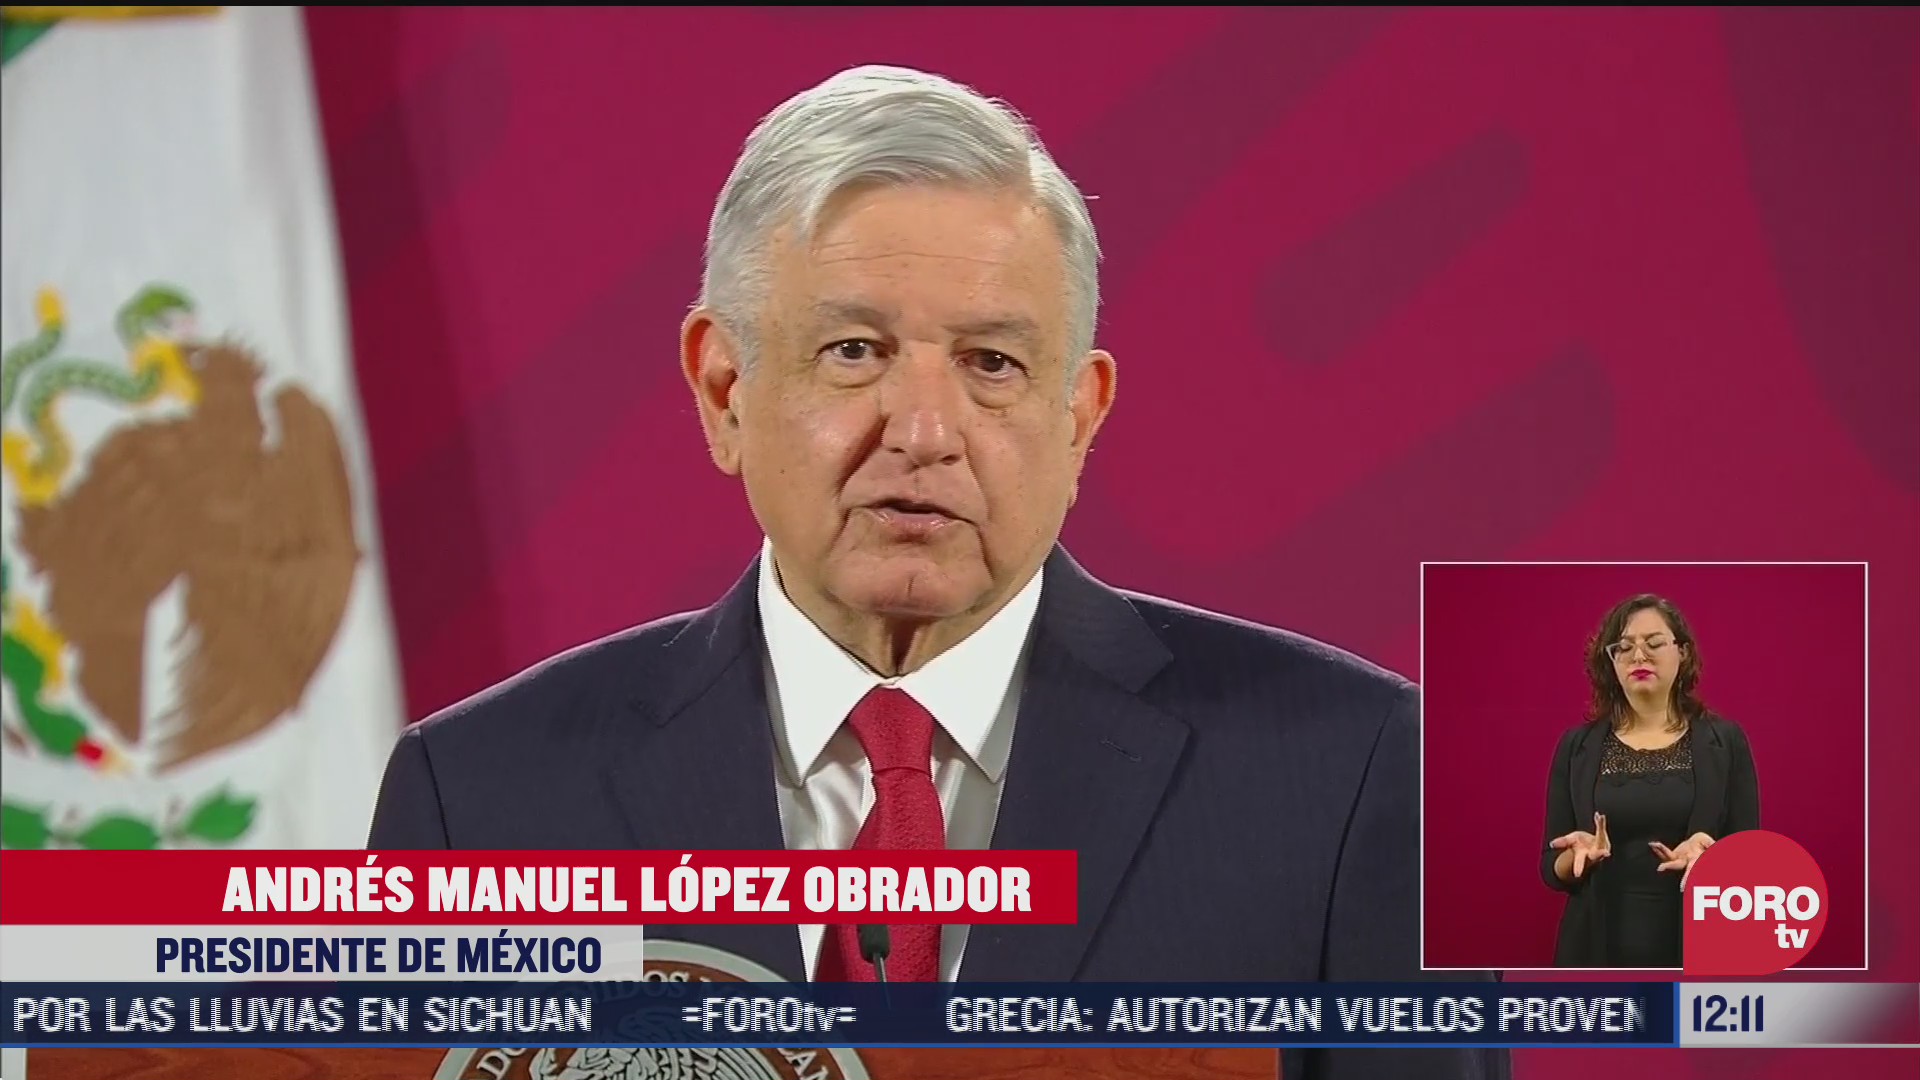 lozoya acordo dar informacion a autoridades mexicanas dice amlo